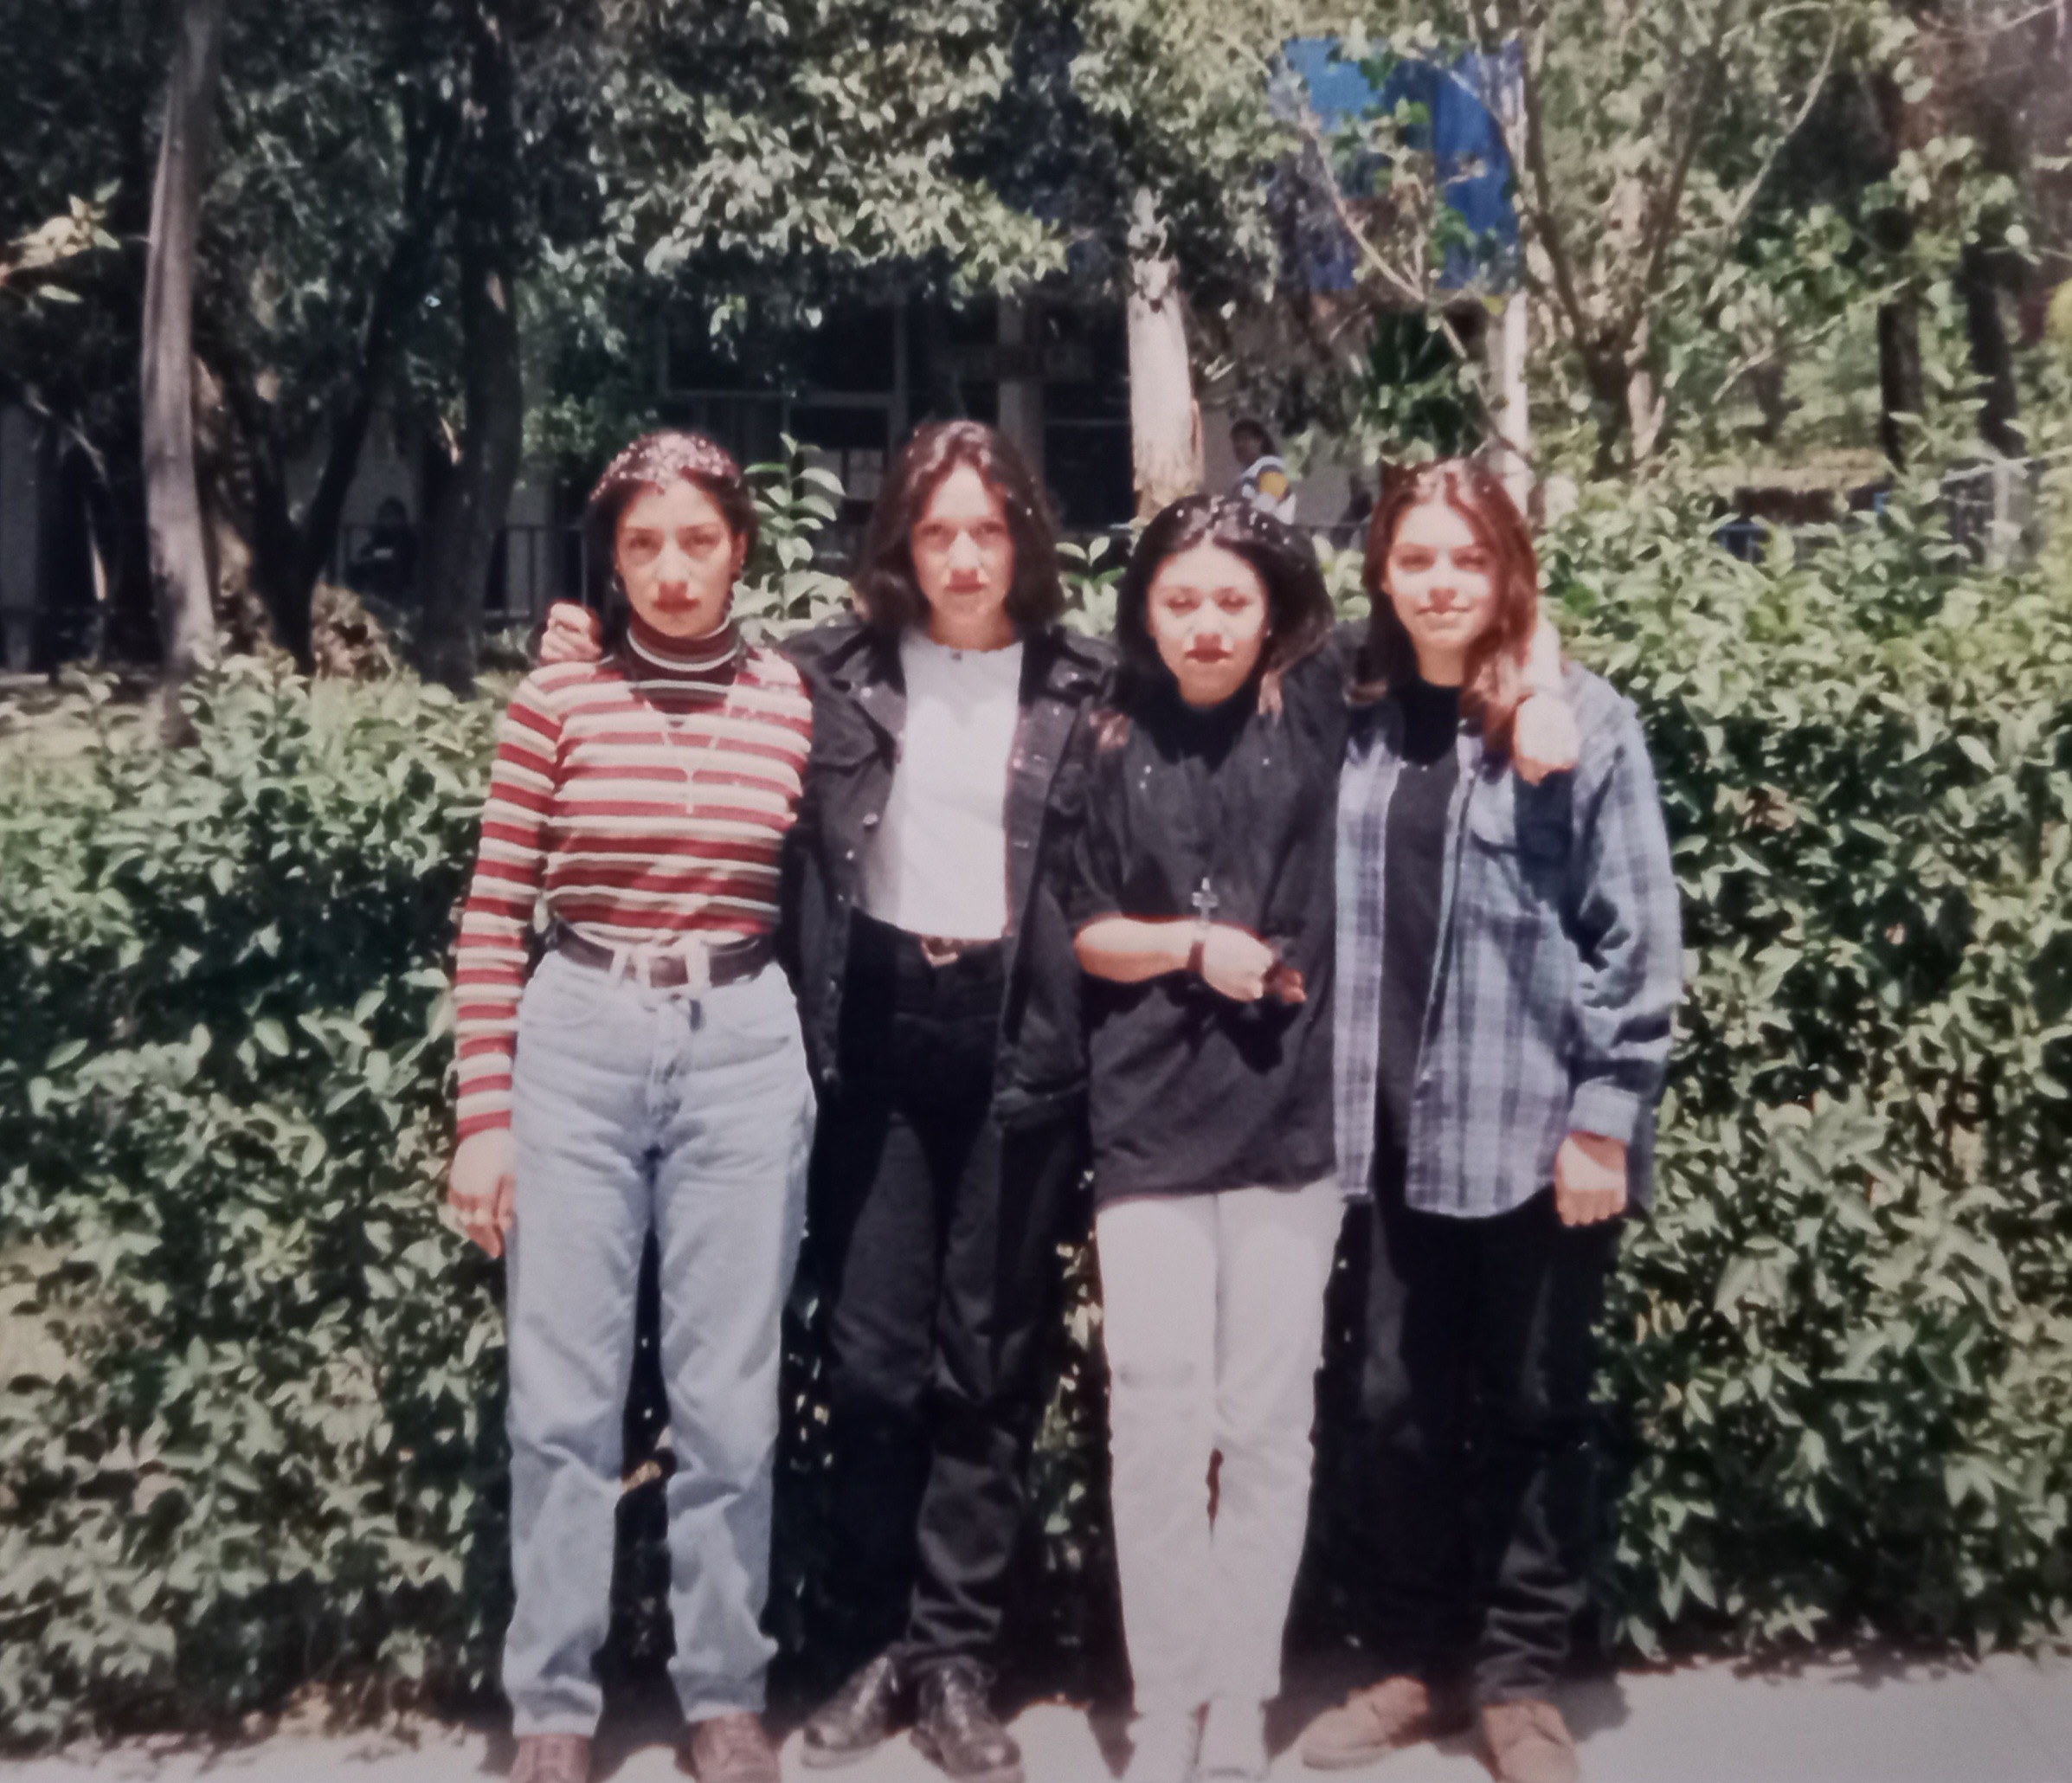 Amigas por siempre, Azucena Hernández, Yessica González, Claudia Morales e Ivonne Villarreal, festejando el cumpleaños de Claudia, por eso las cuatro tienen confeti en el cabello, 1996.